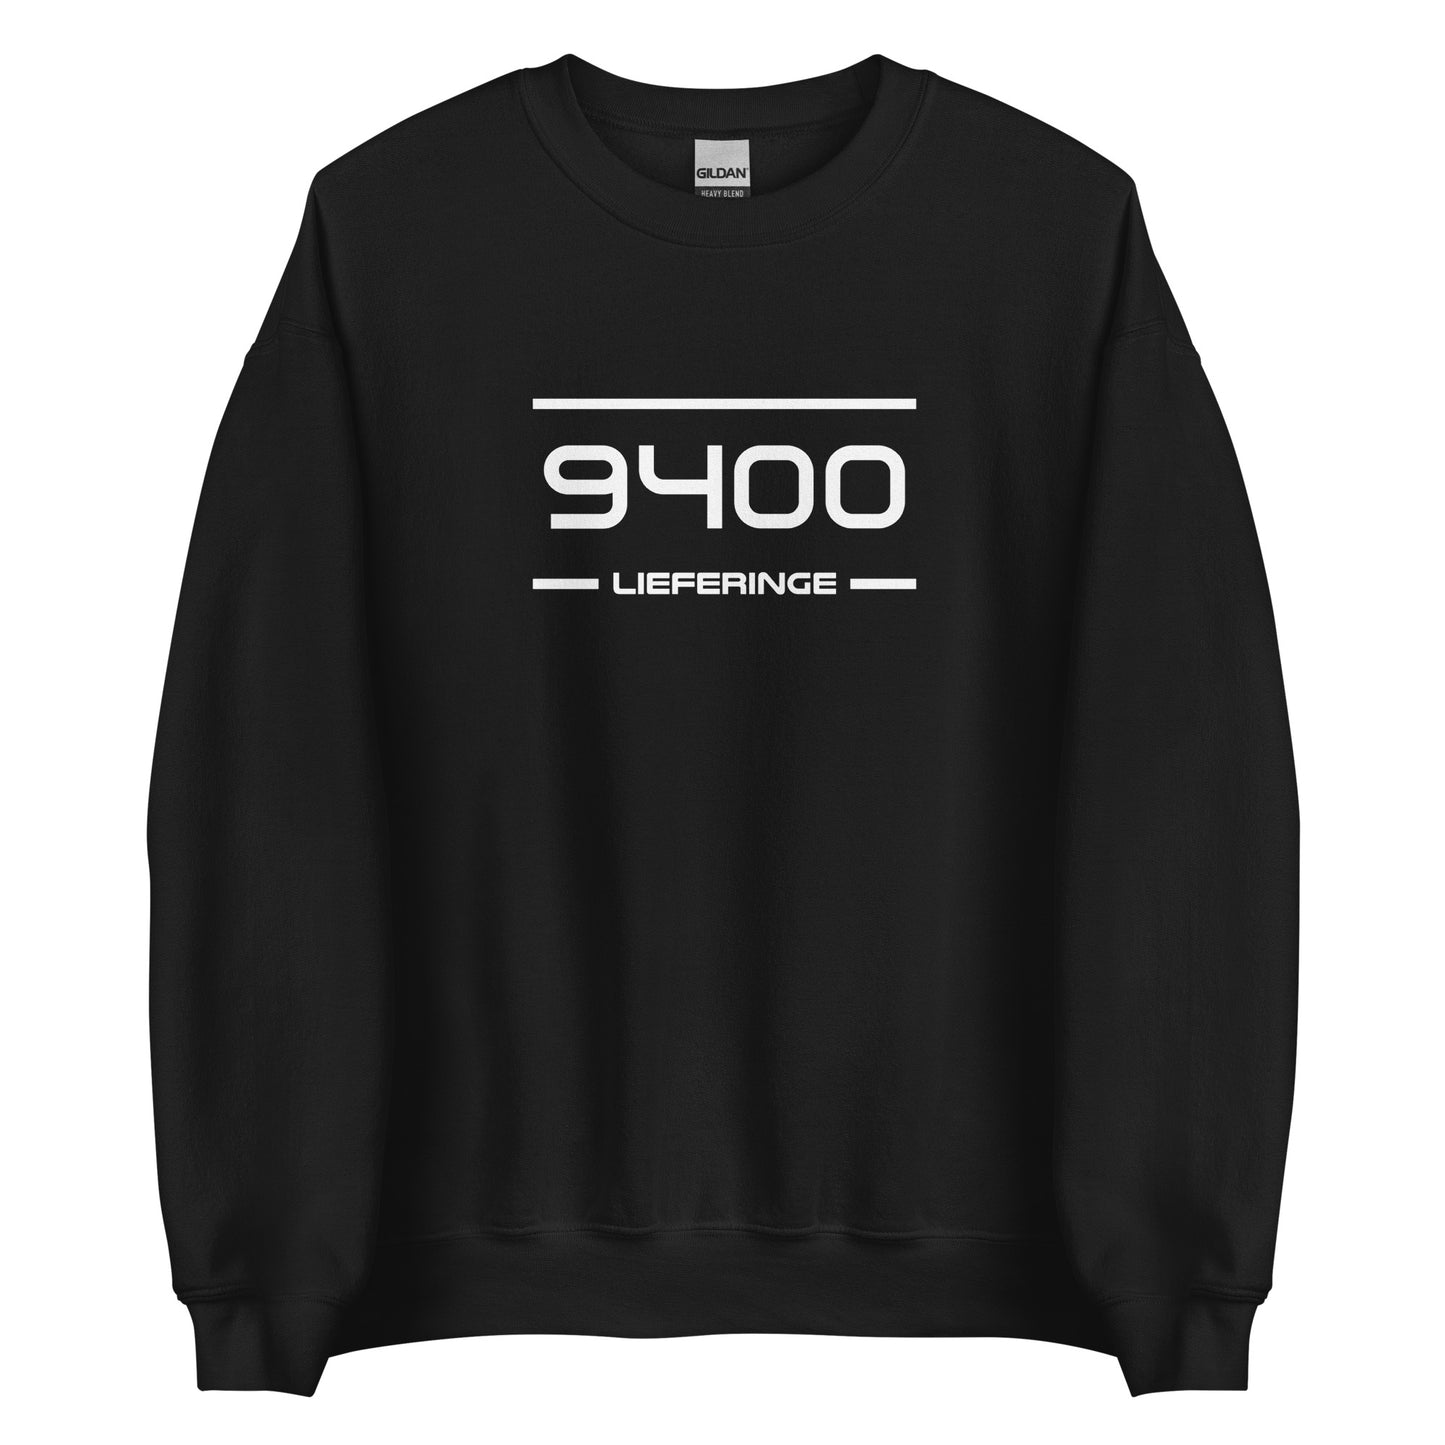 Sweater - 9400 - Lieferinge (M/V)